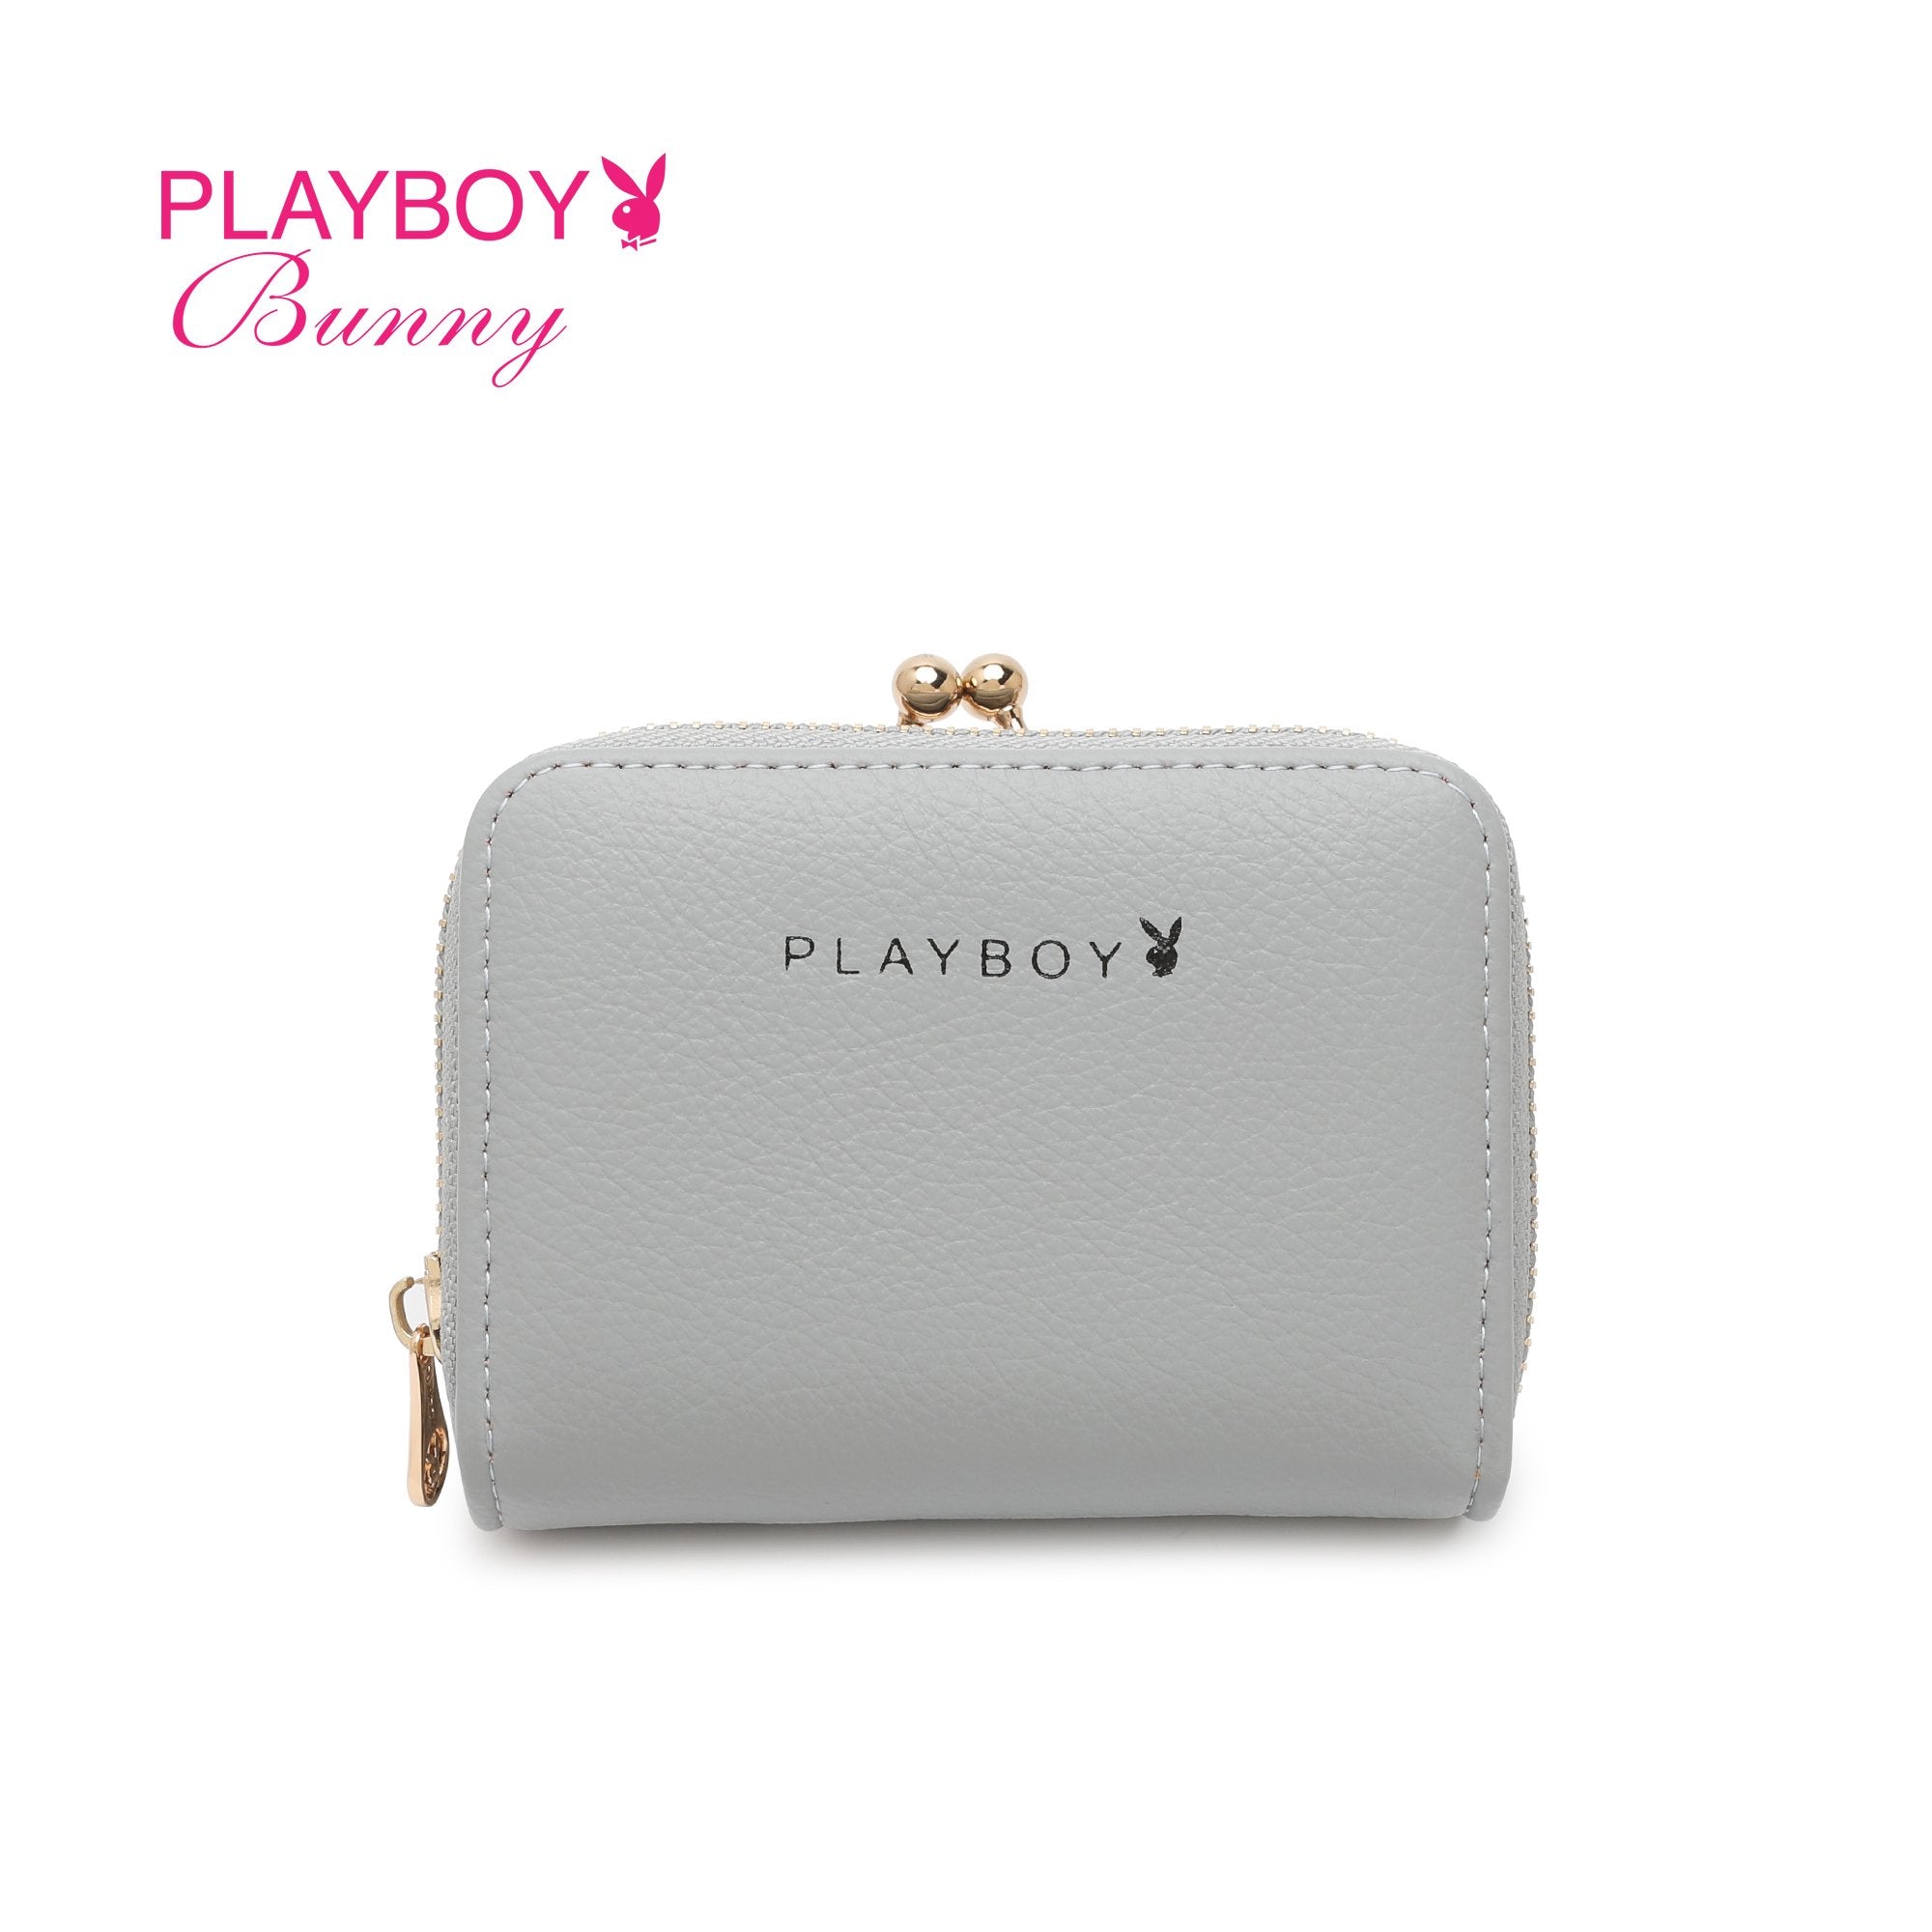 Playboy purse handbag faux - Gem